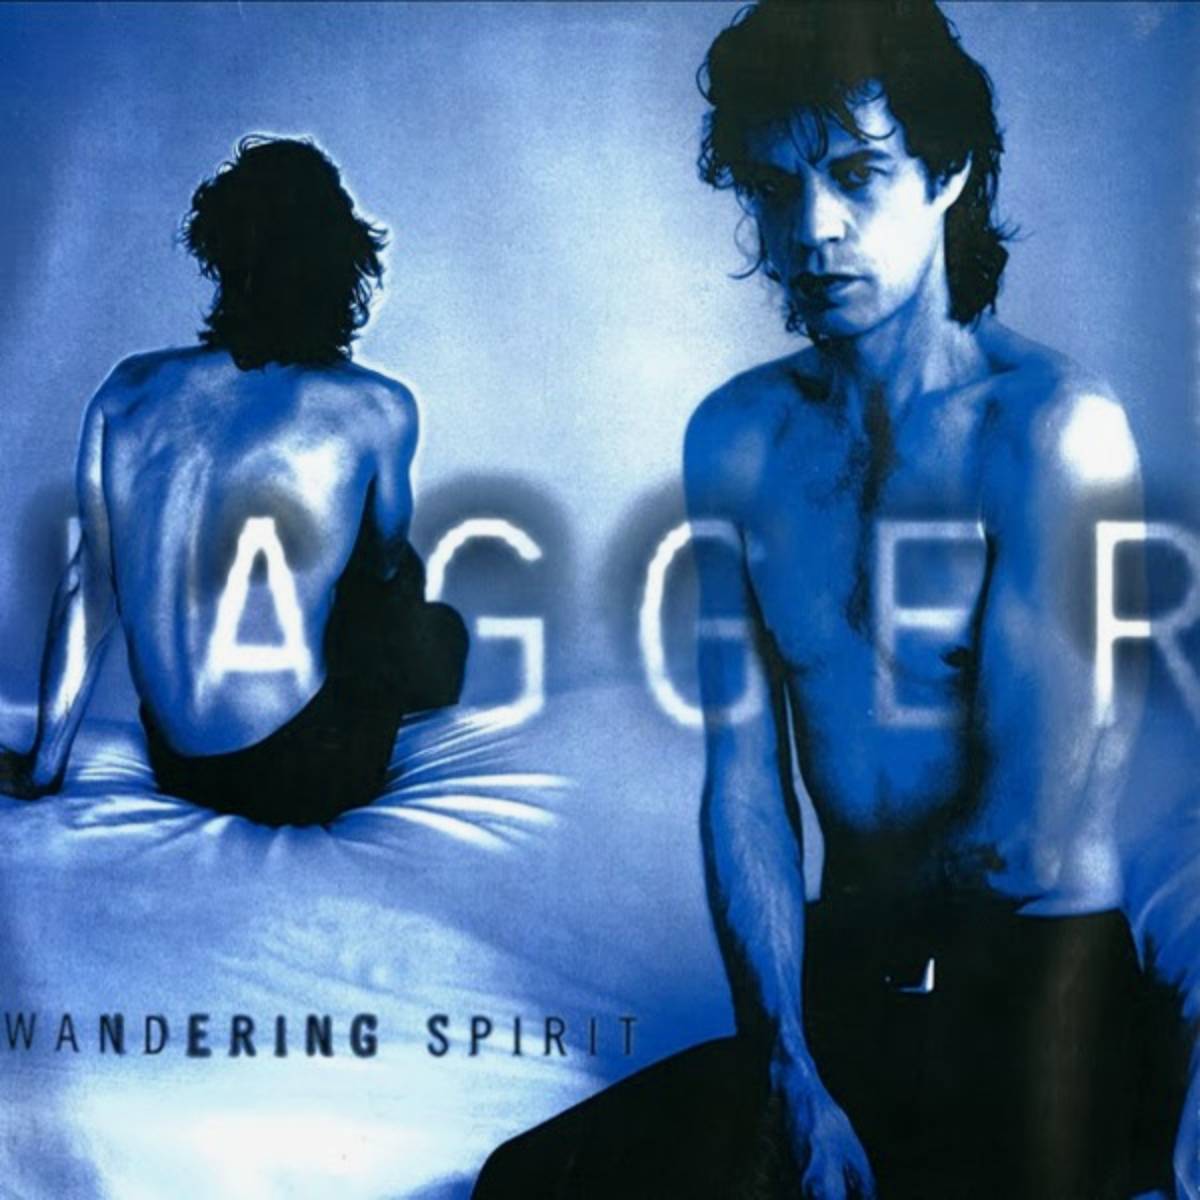 Mick Jagger - "wandering Spirit" (1993)